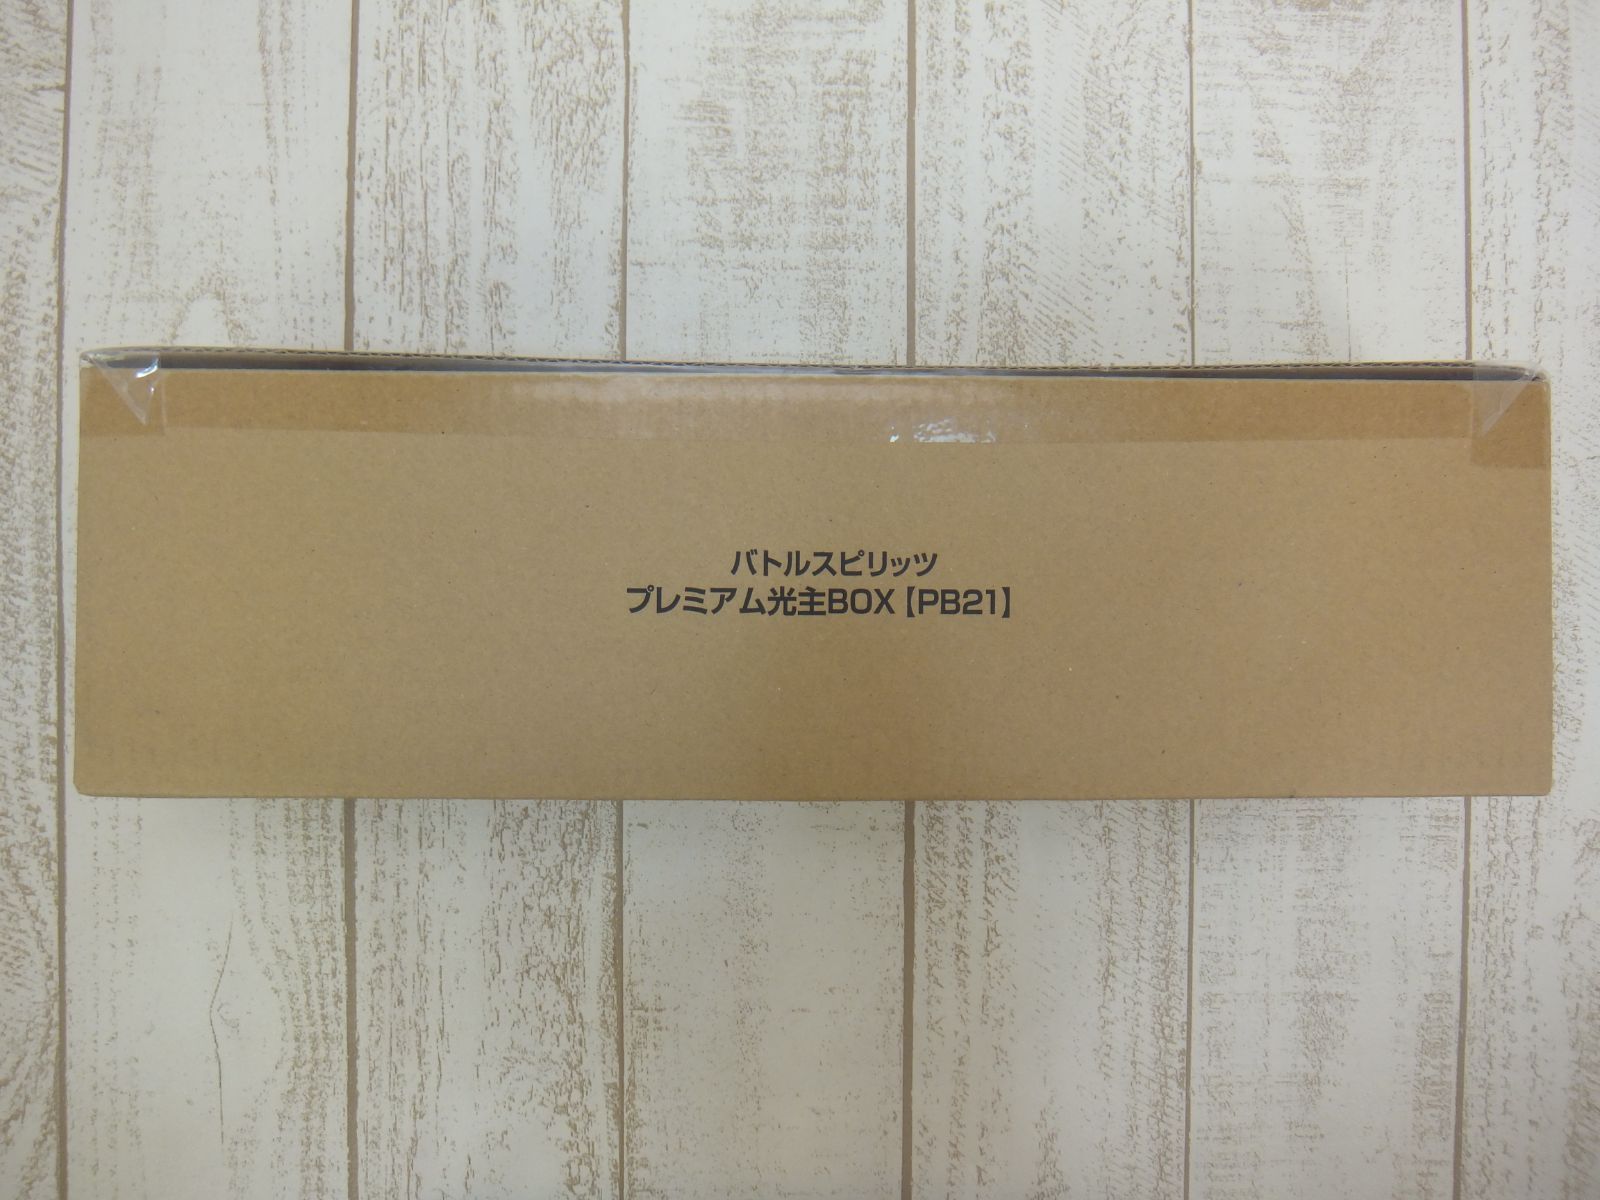 086 バトルスピリッツ プレミアム光主BOX【PB21】未開封品 - メルカリ